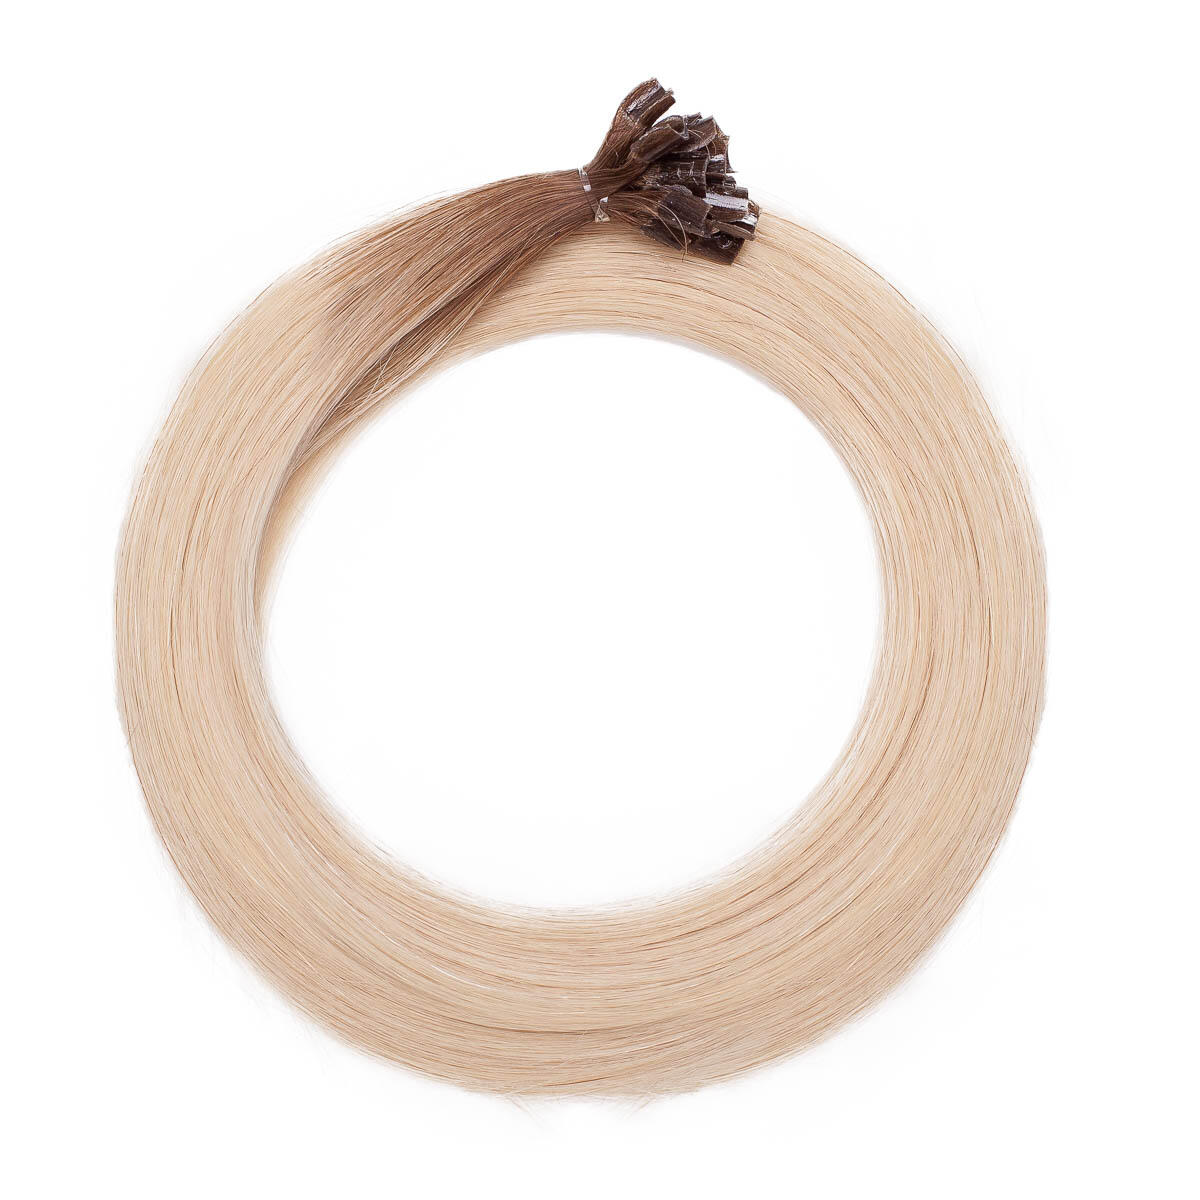 Nail Hair R5.1/10.8 Medium Ash Blonde Root 50 cm